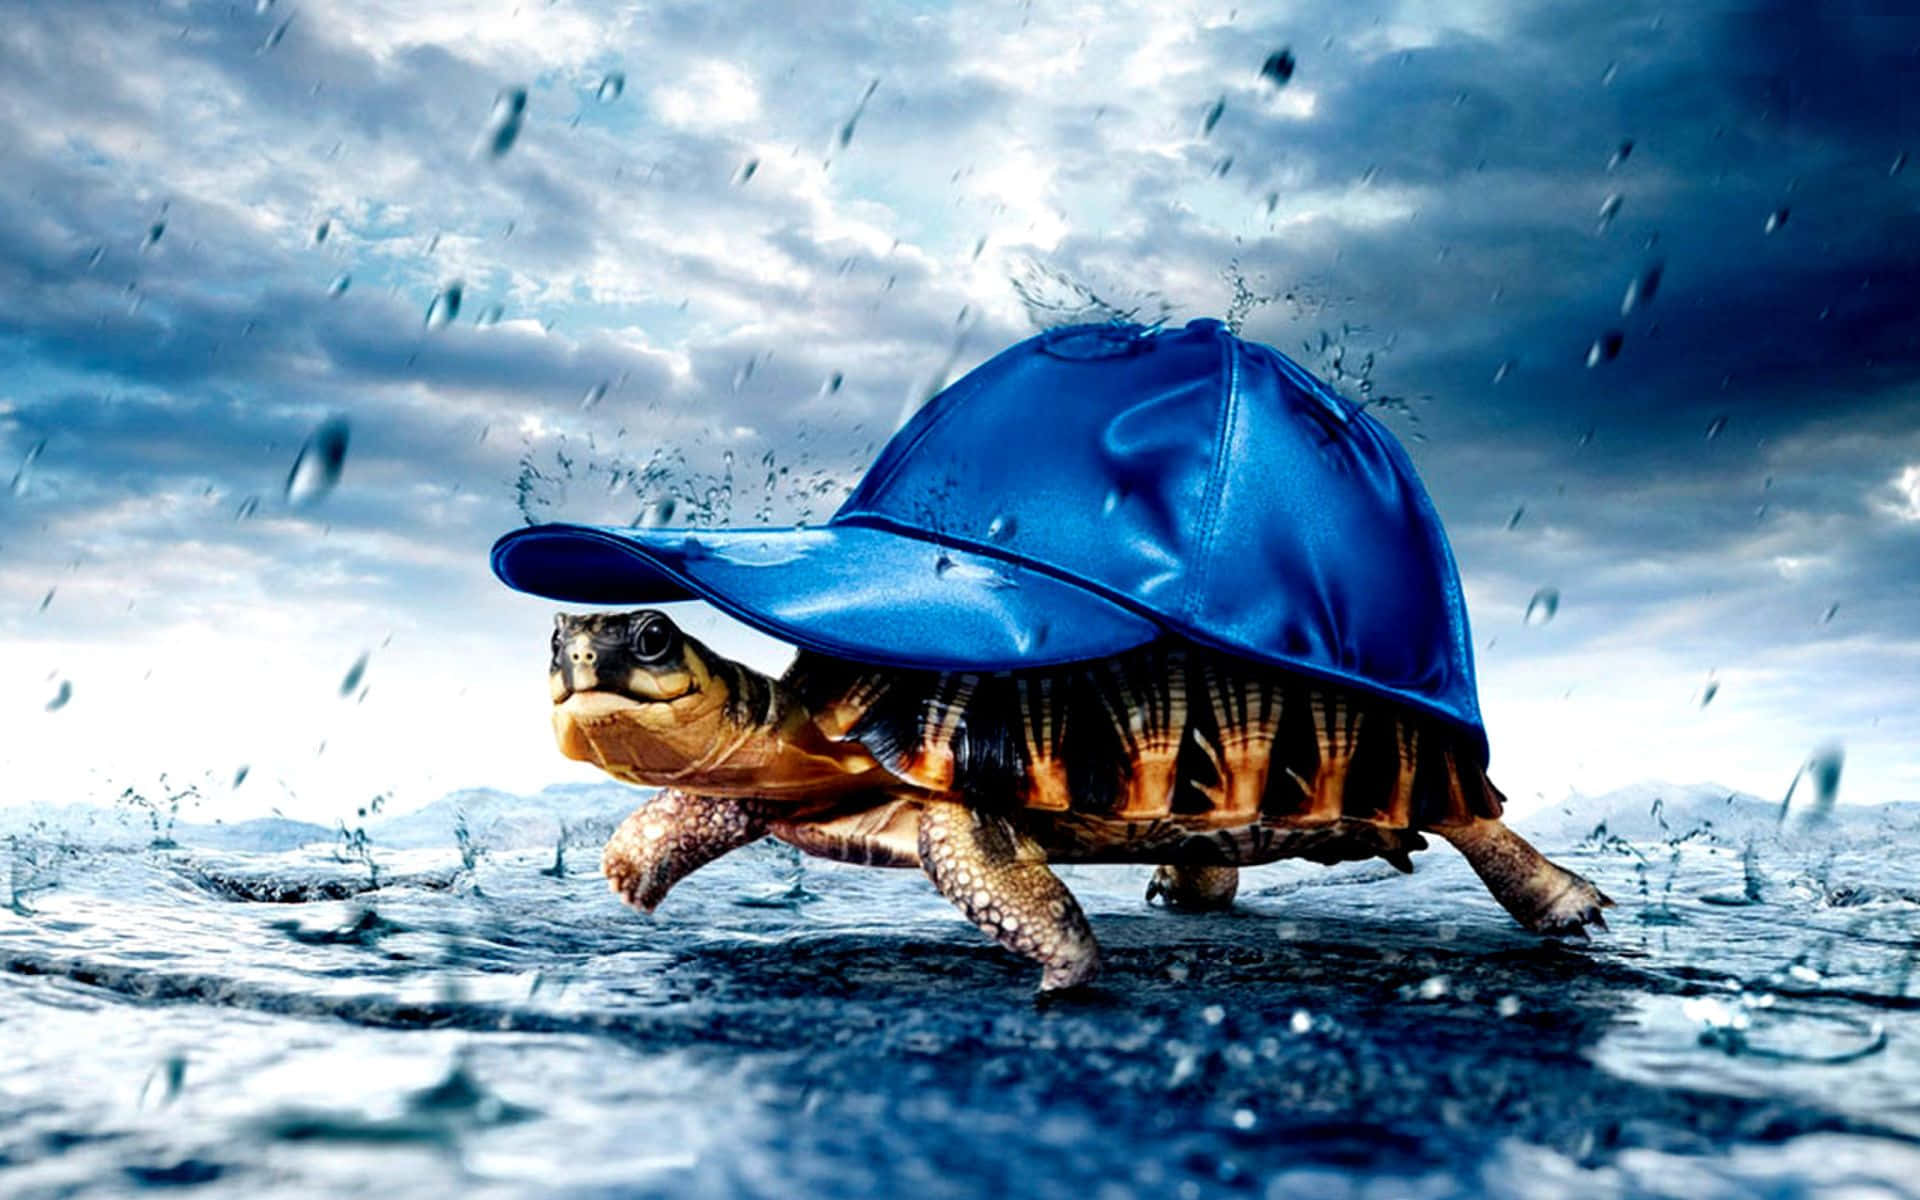 turtle in rain wearing a blue hat